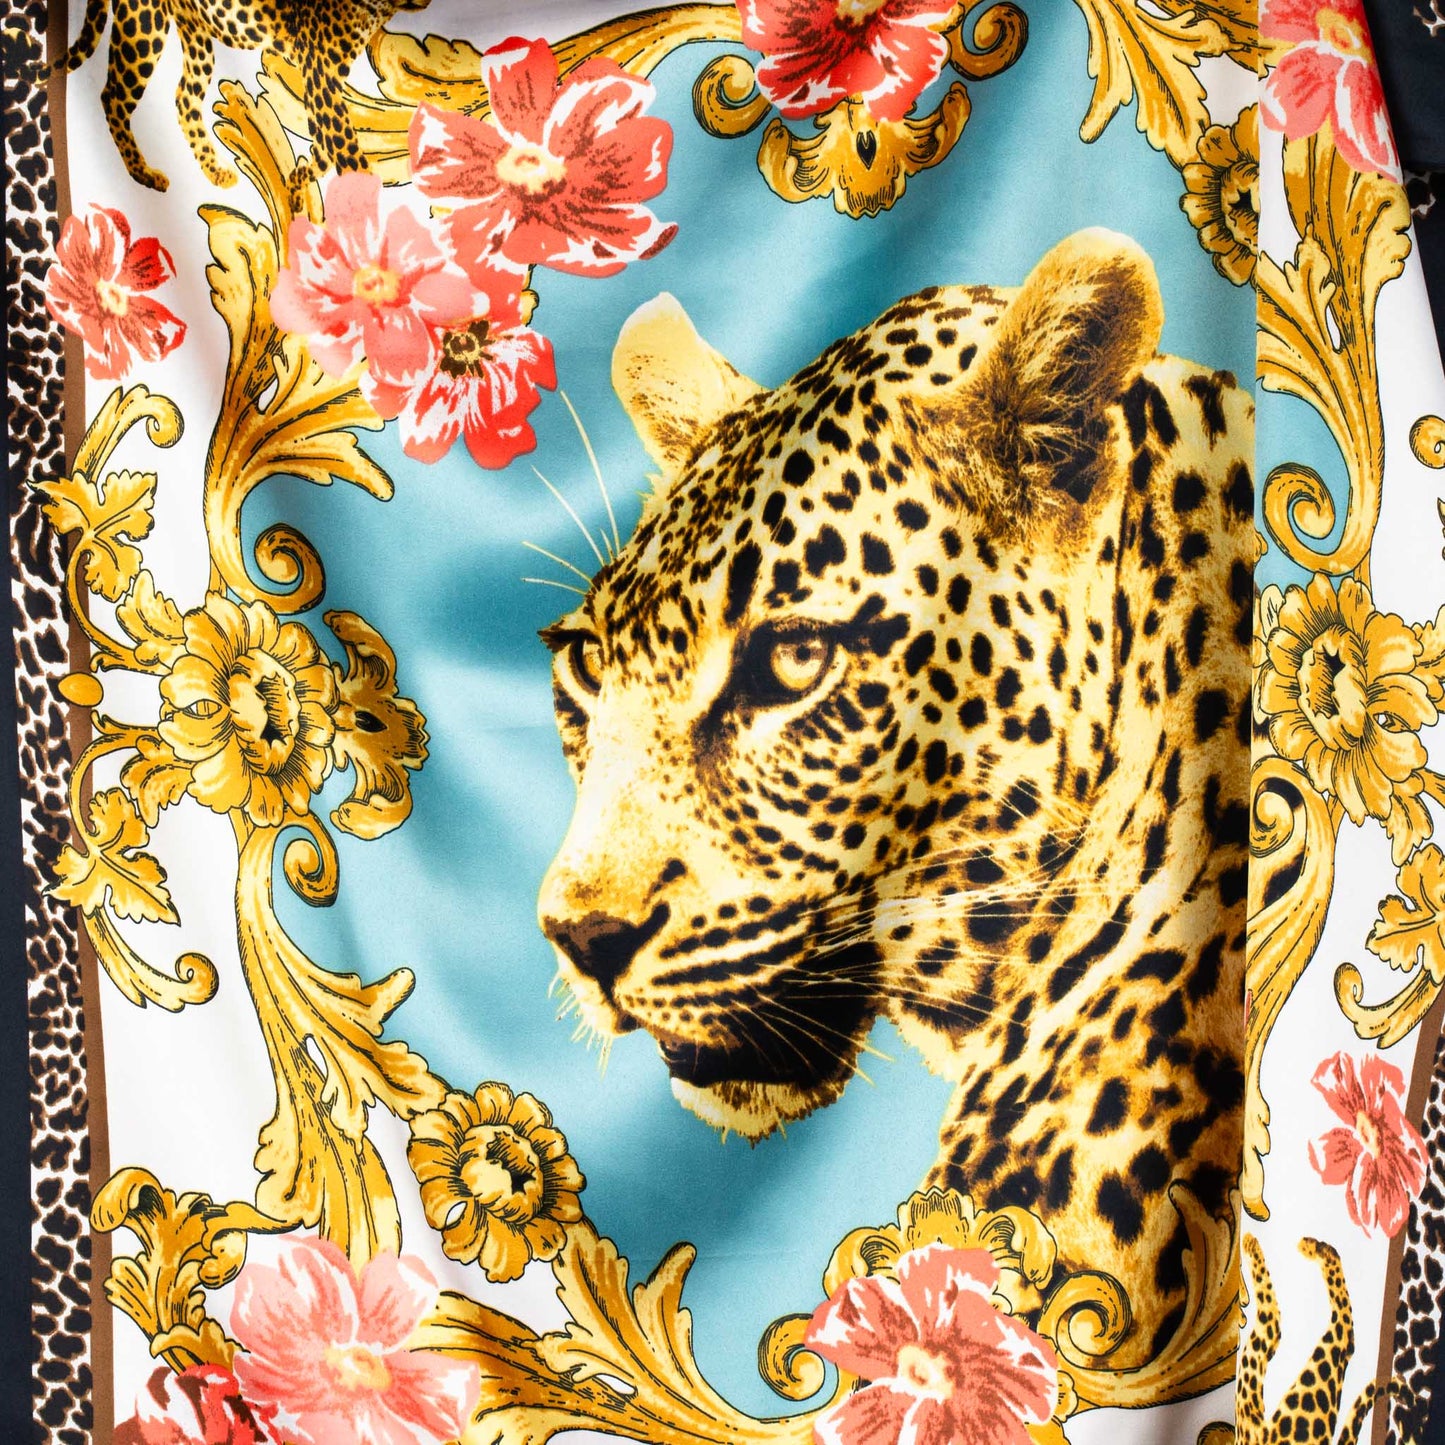 Eșarfă damă din satin cu imprimeu leopard portret, 70 x 70 cm - Wild Vibes